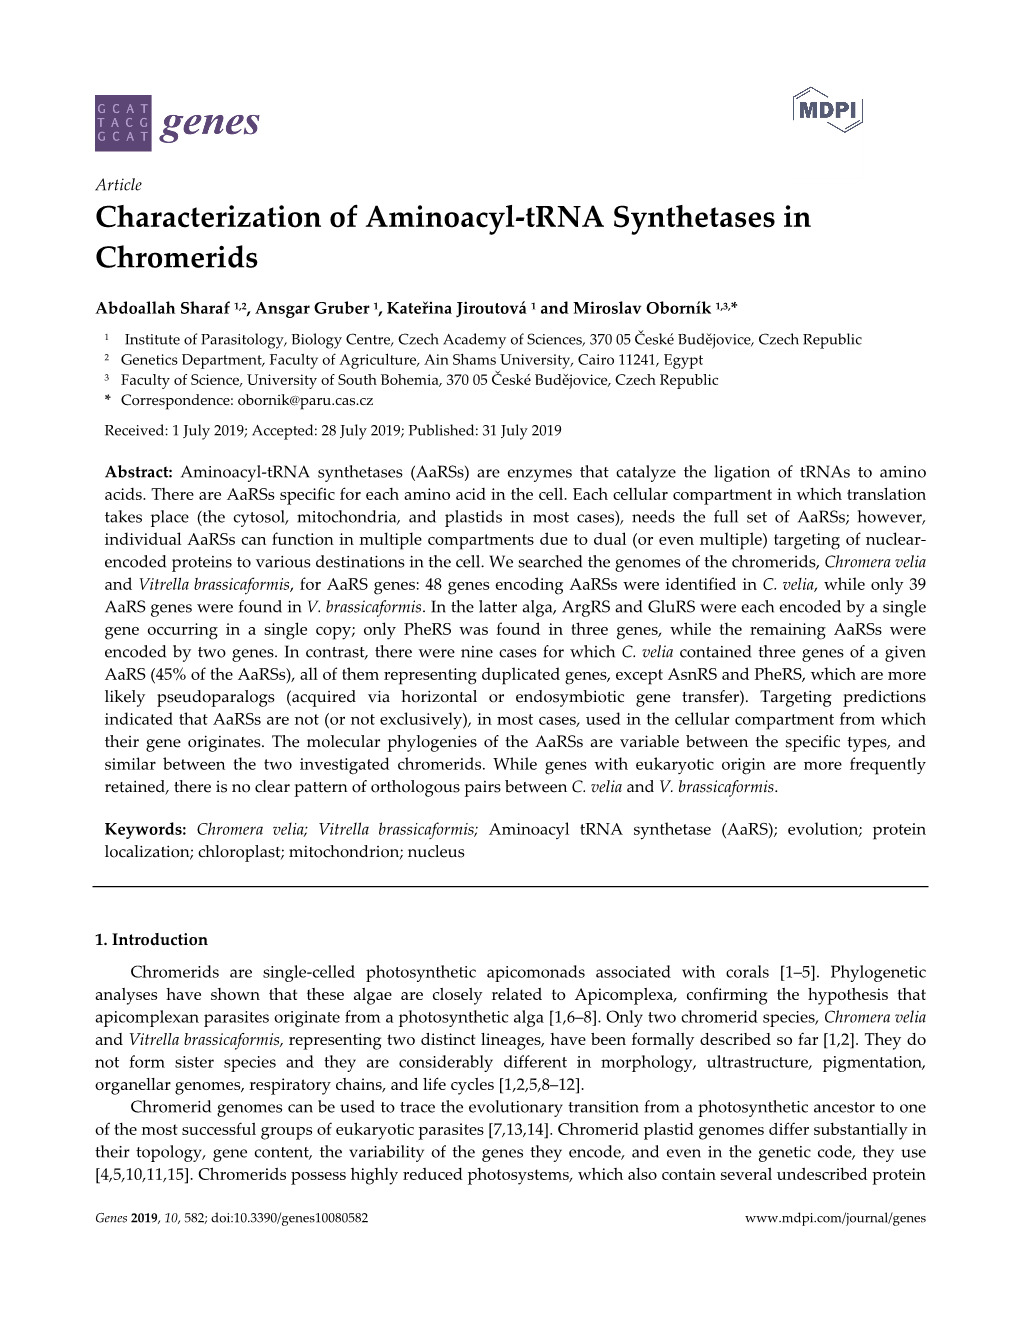 Characterization of Aminoacyl-Trna Synthetases in Chromerids